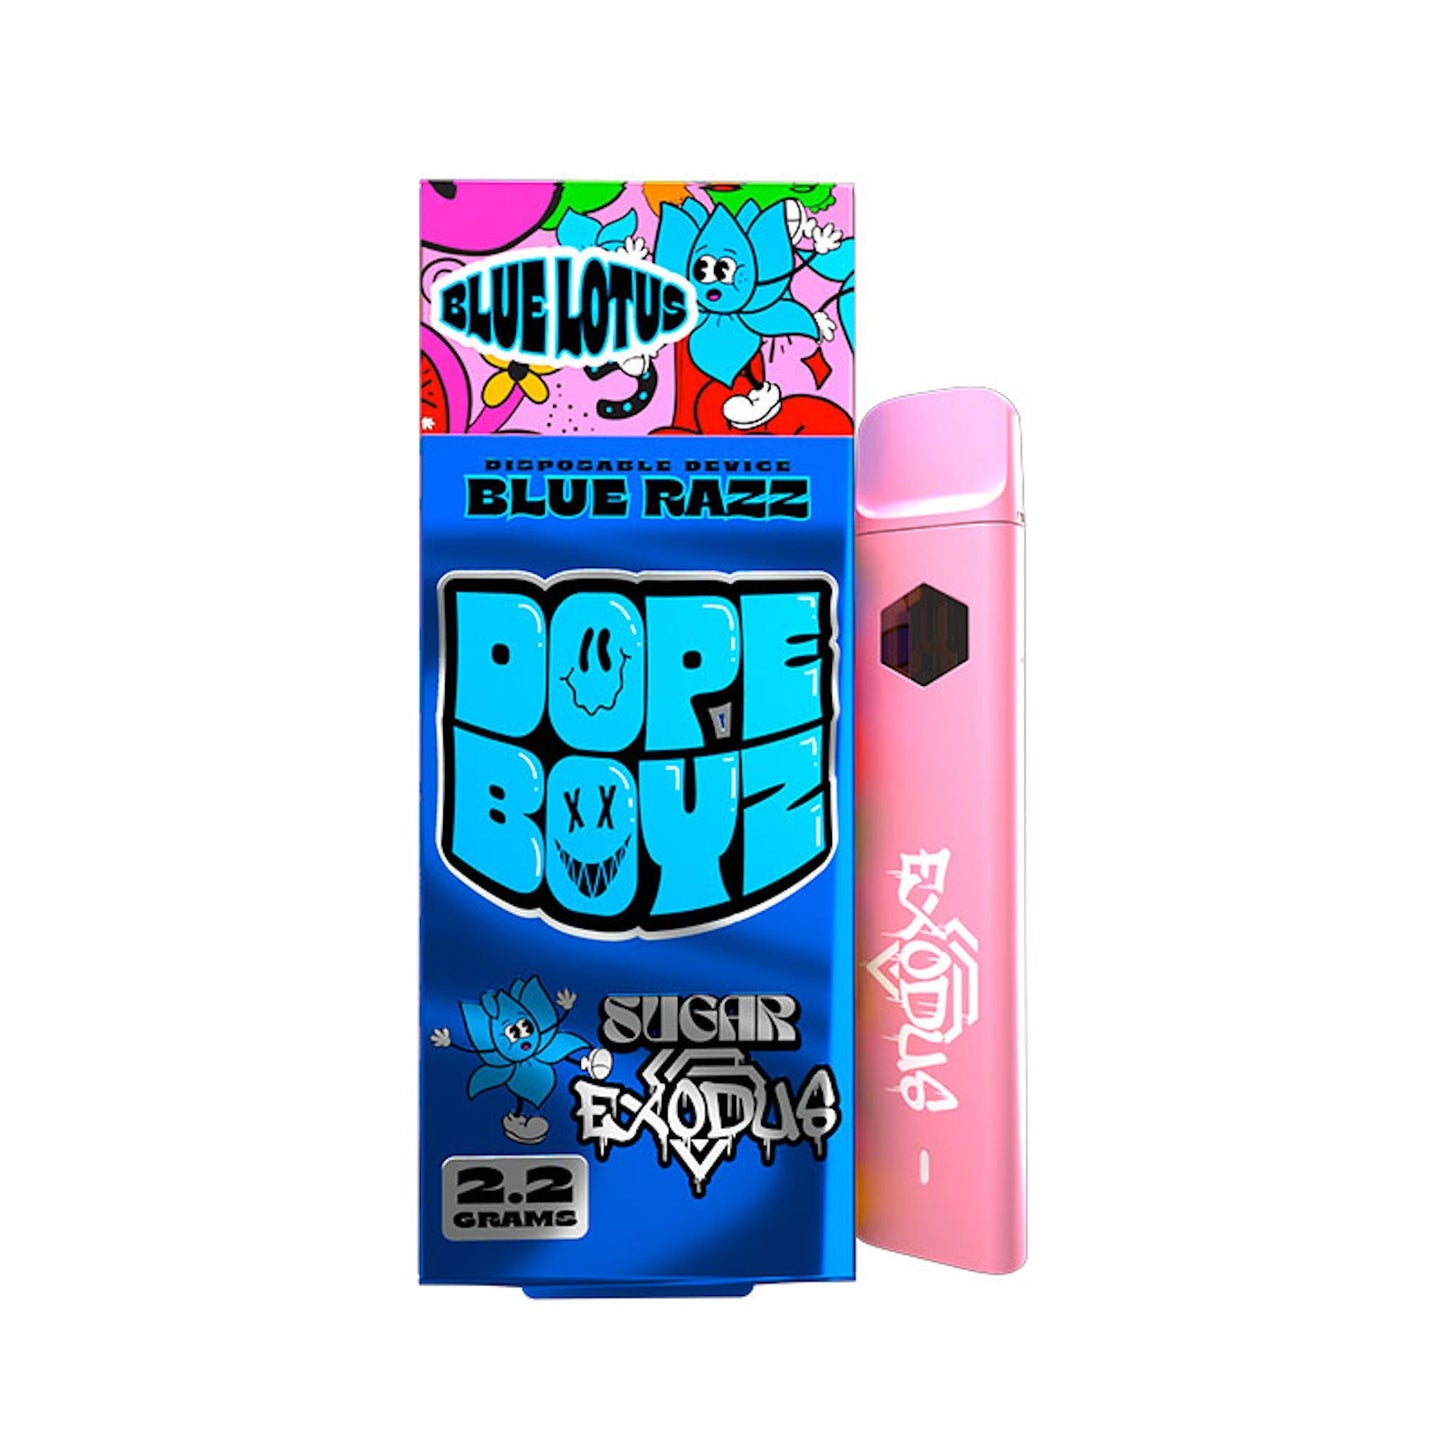 Dope Boyz Blue Lotus Vaporizer